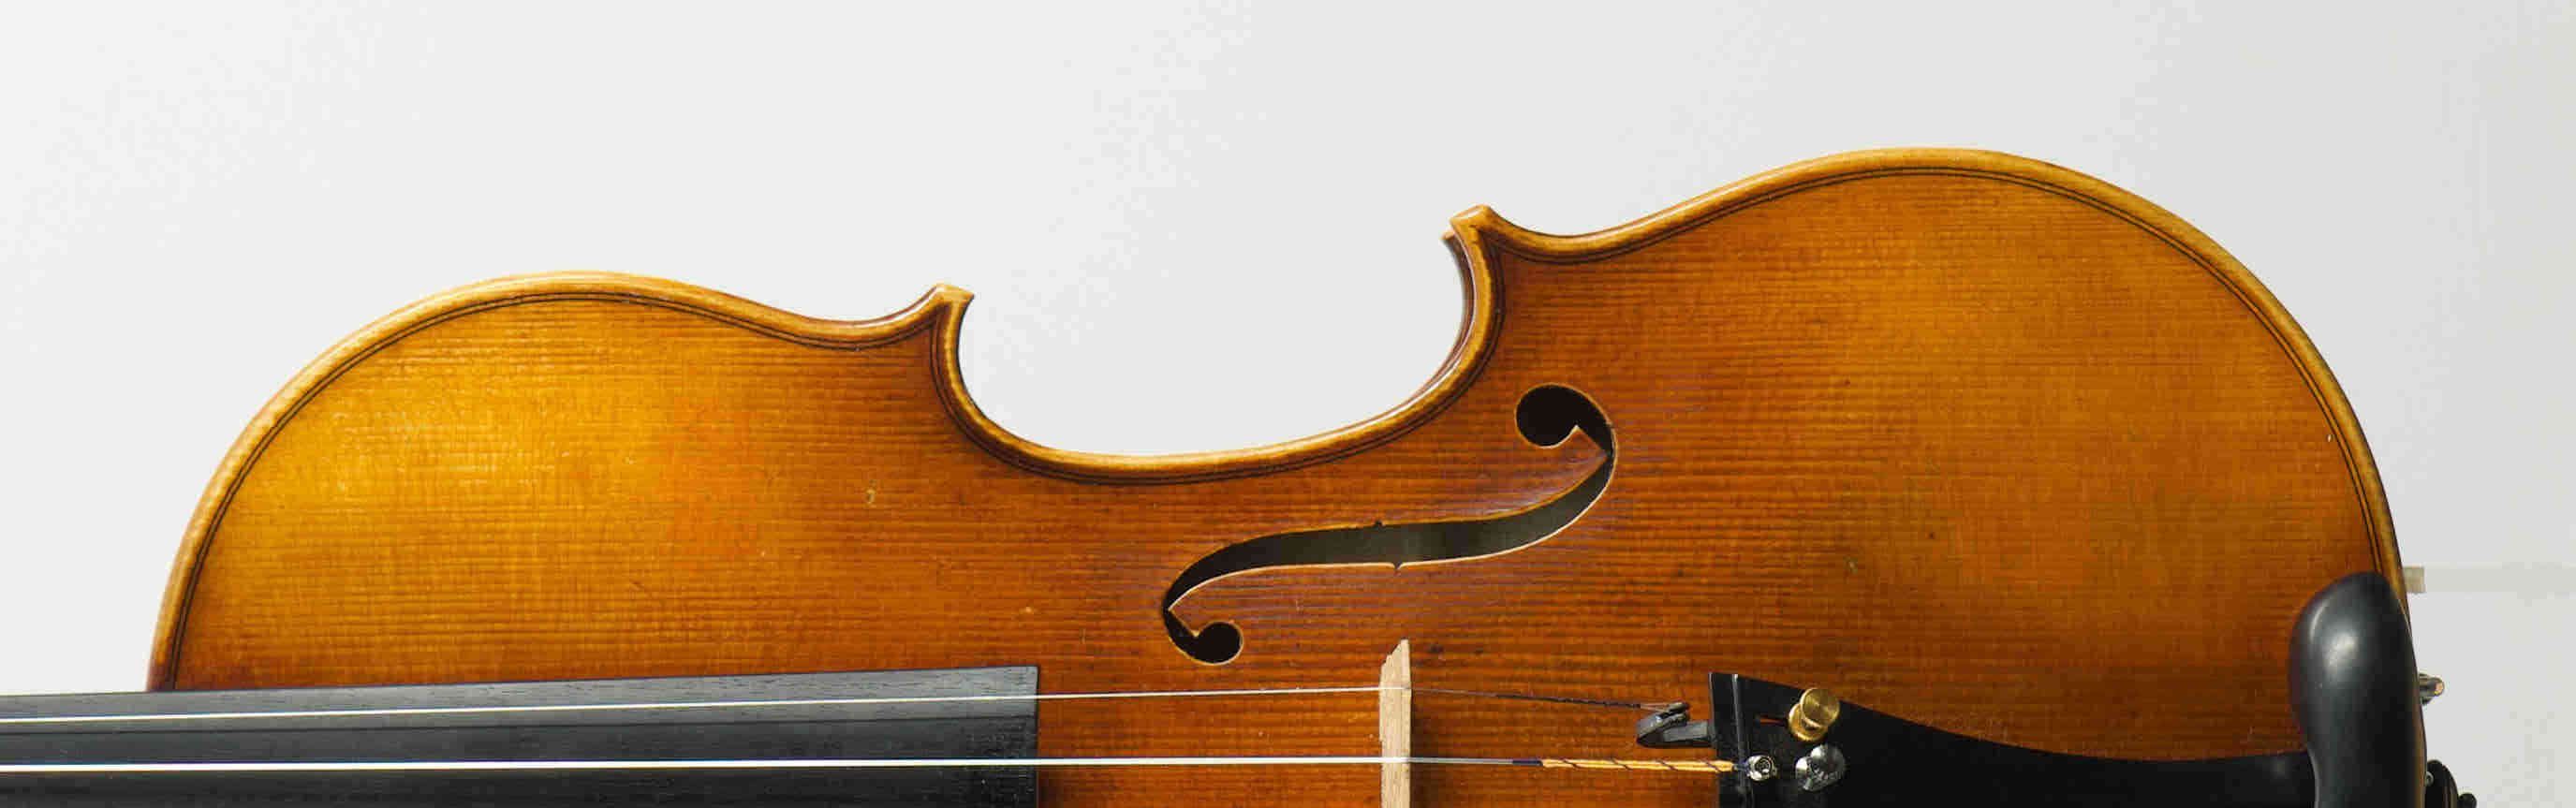 Violin Antonio Stradivari 'Mediceo' 1716